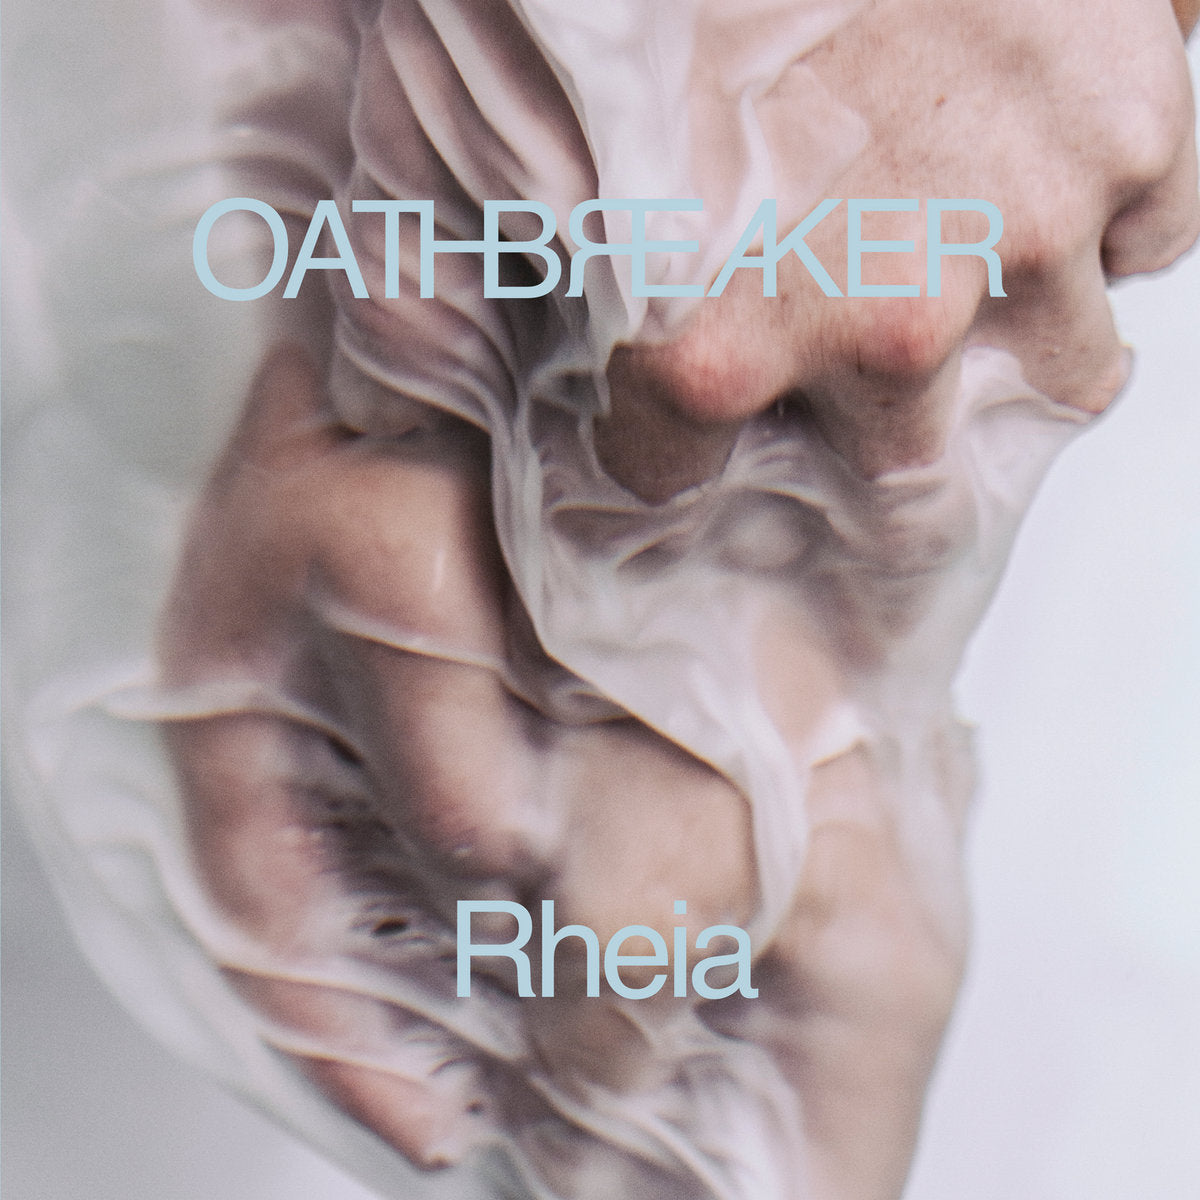 Oathbreaker "Rheia" 2xLP